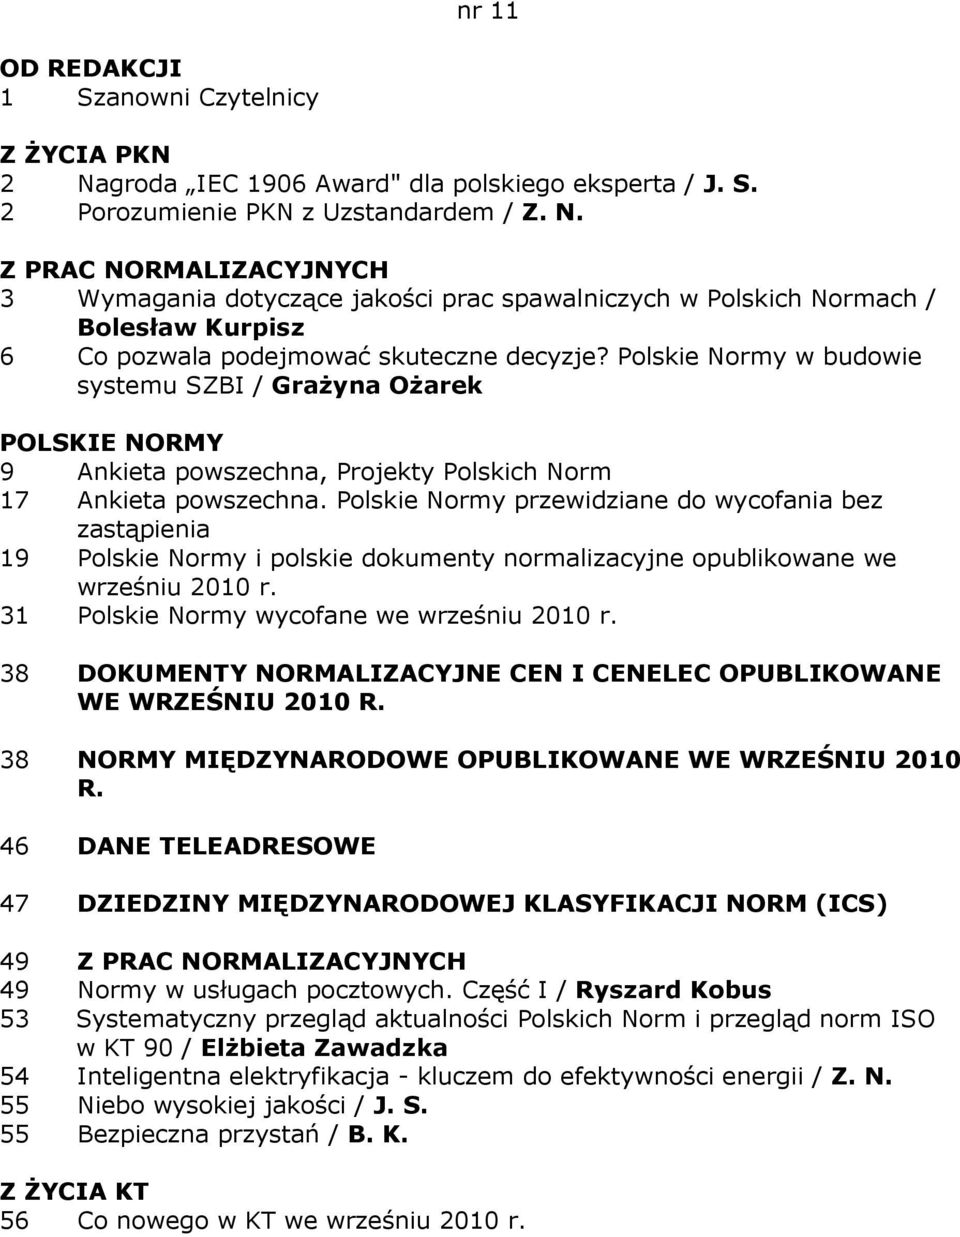 Polskie Normy przewidziane do wycofania bez 19 Polskie Normy i polskie dokumenty normalizacyjne opublikowane we wrześniu 2010 r. 31 Polskie Normy wycofane we wrześniu 2010 r.